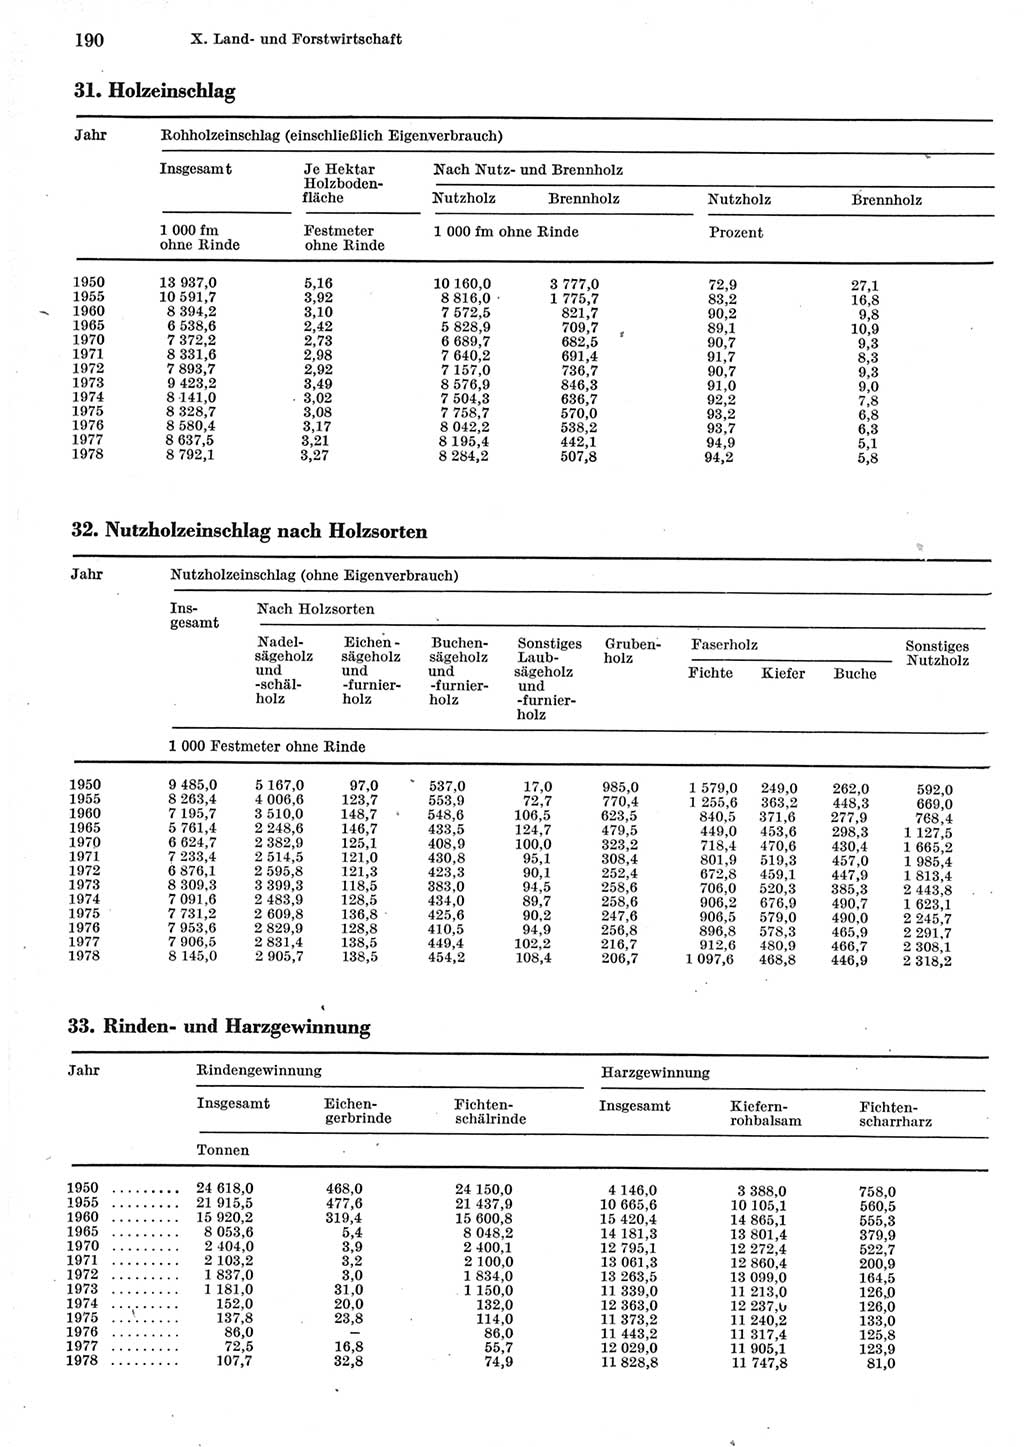 Statistisches Jahrbuch der Deutschen Demokratischen Republik (DDR) 1979, Seite 190 (Stat. Jb. DDR 1979, S. 190)